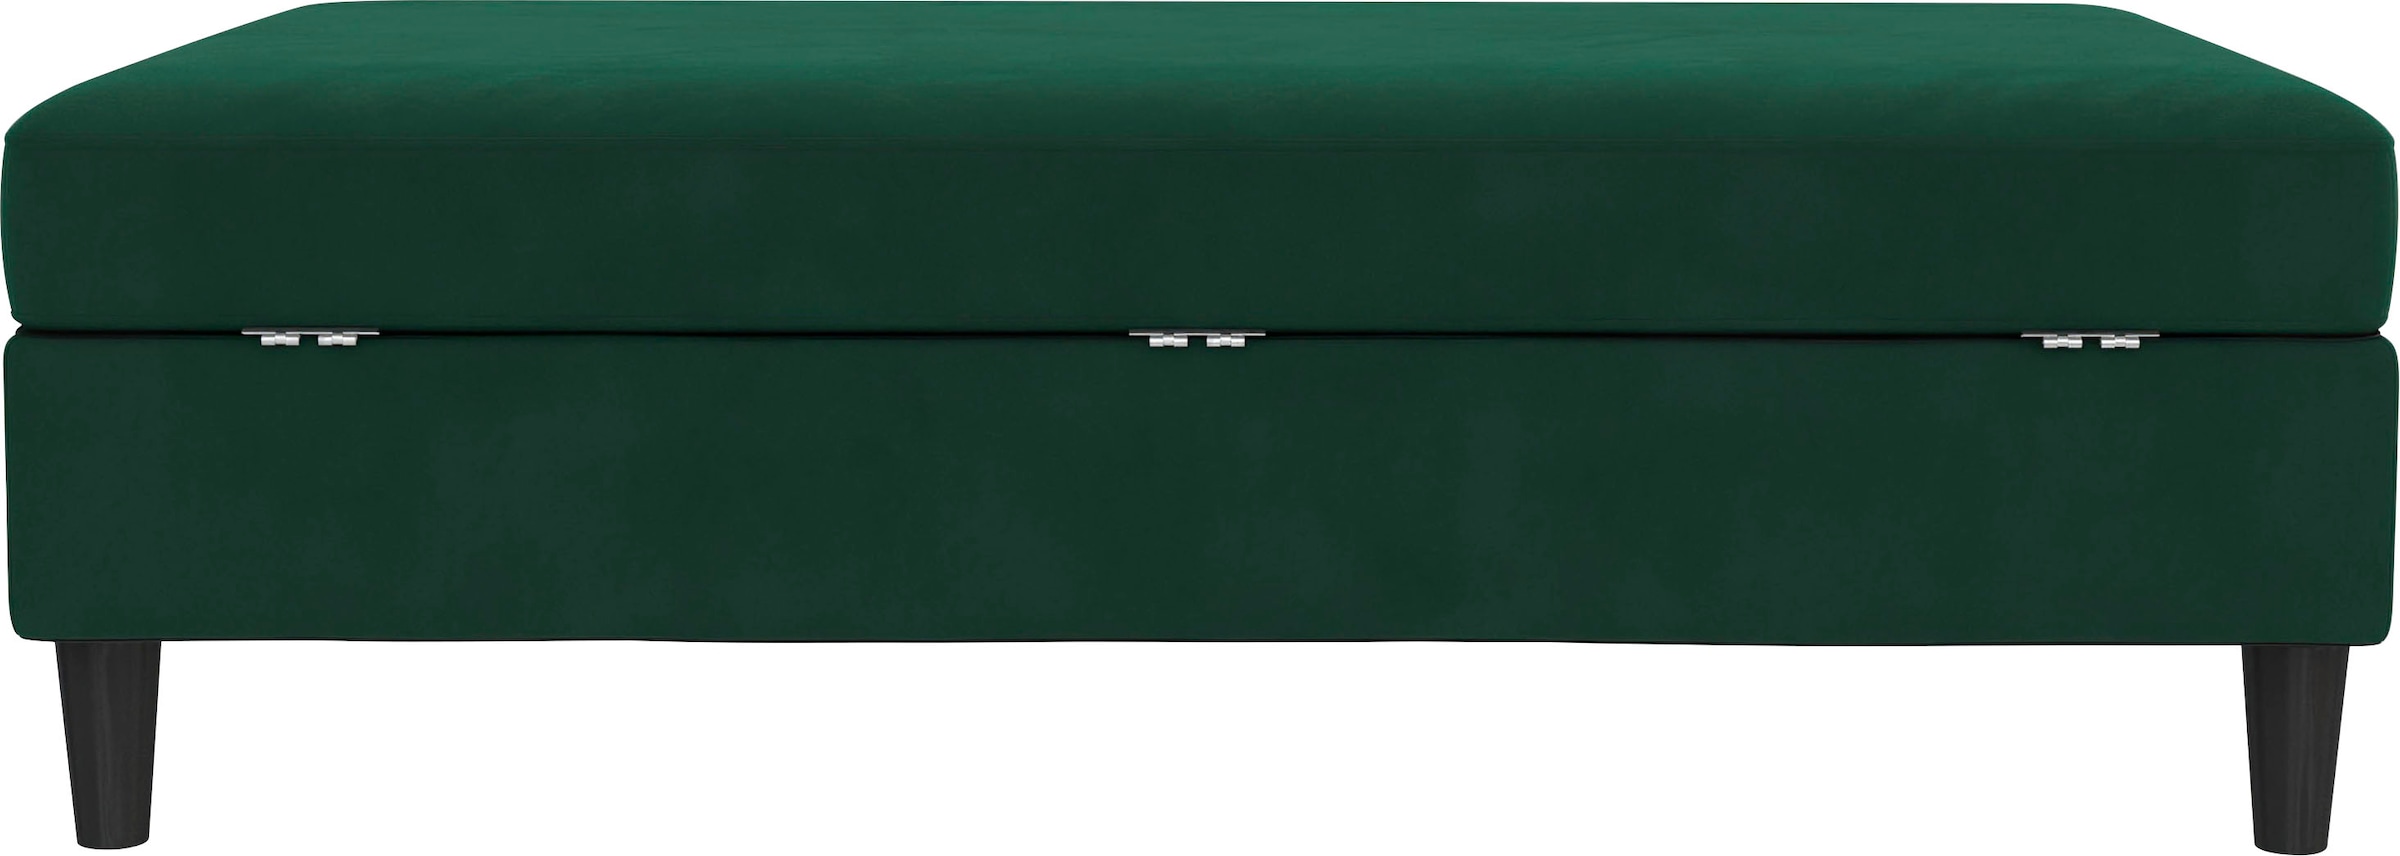 Dorel Home Stauraumhocker »Hartford«, Polsterhocker mit Stauraum, frei im Raum stellbar, Sitzhöhe 43 cm